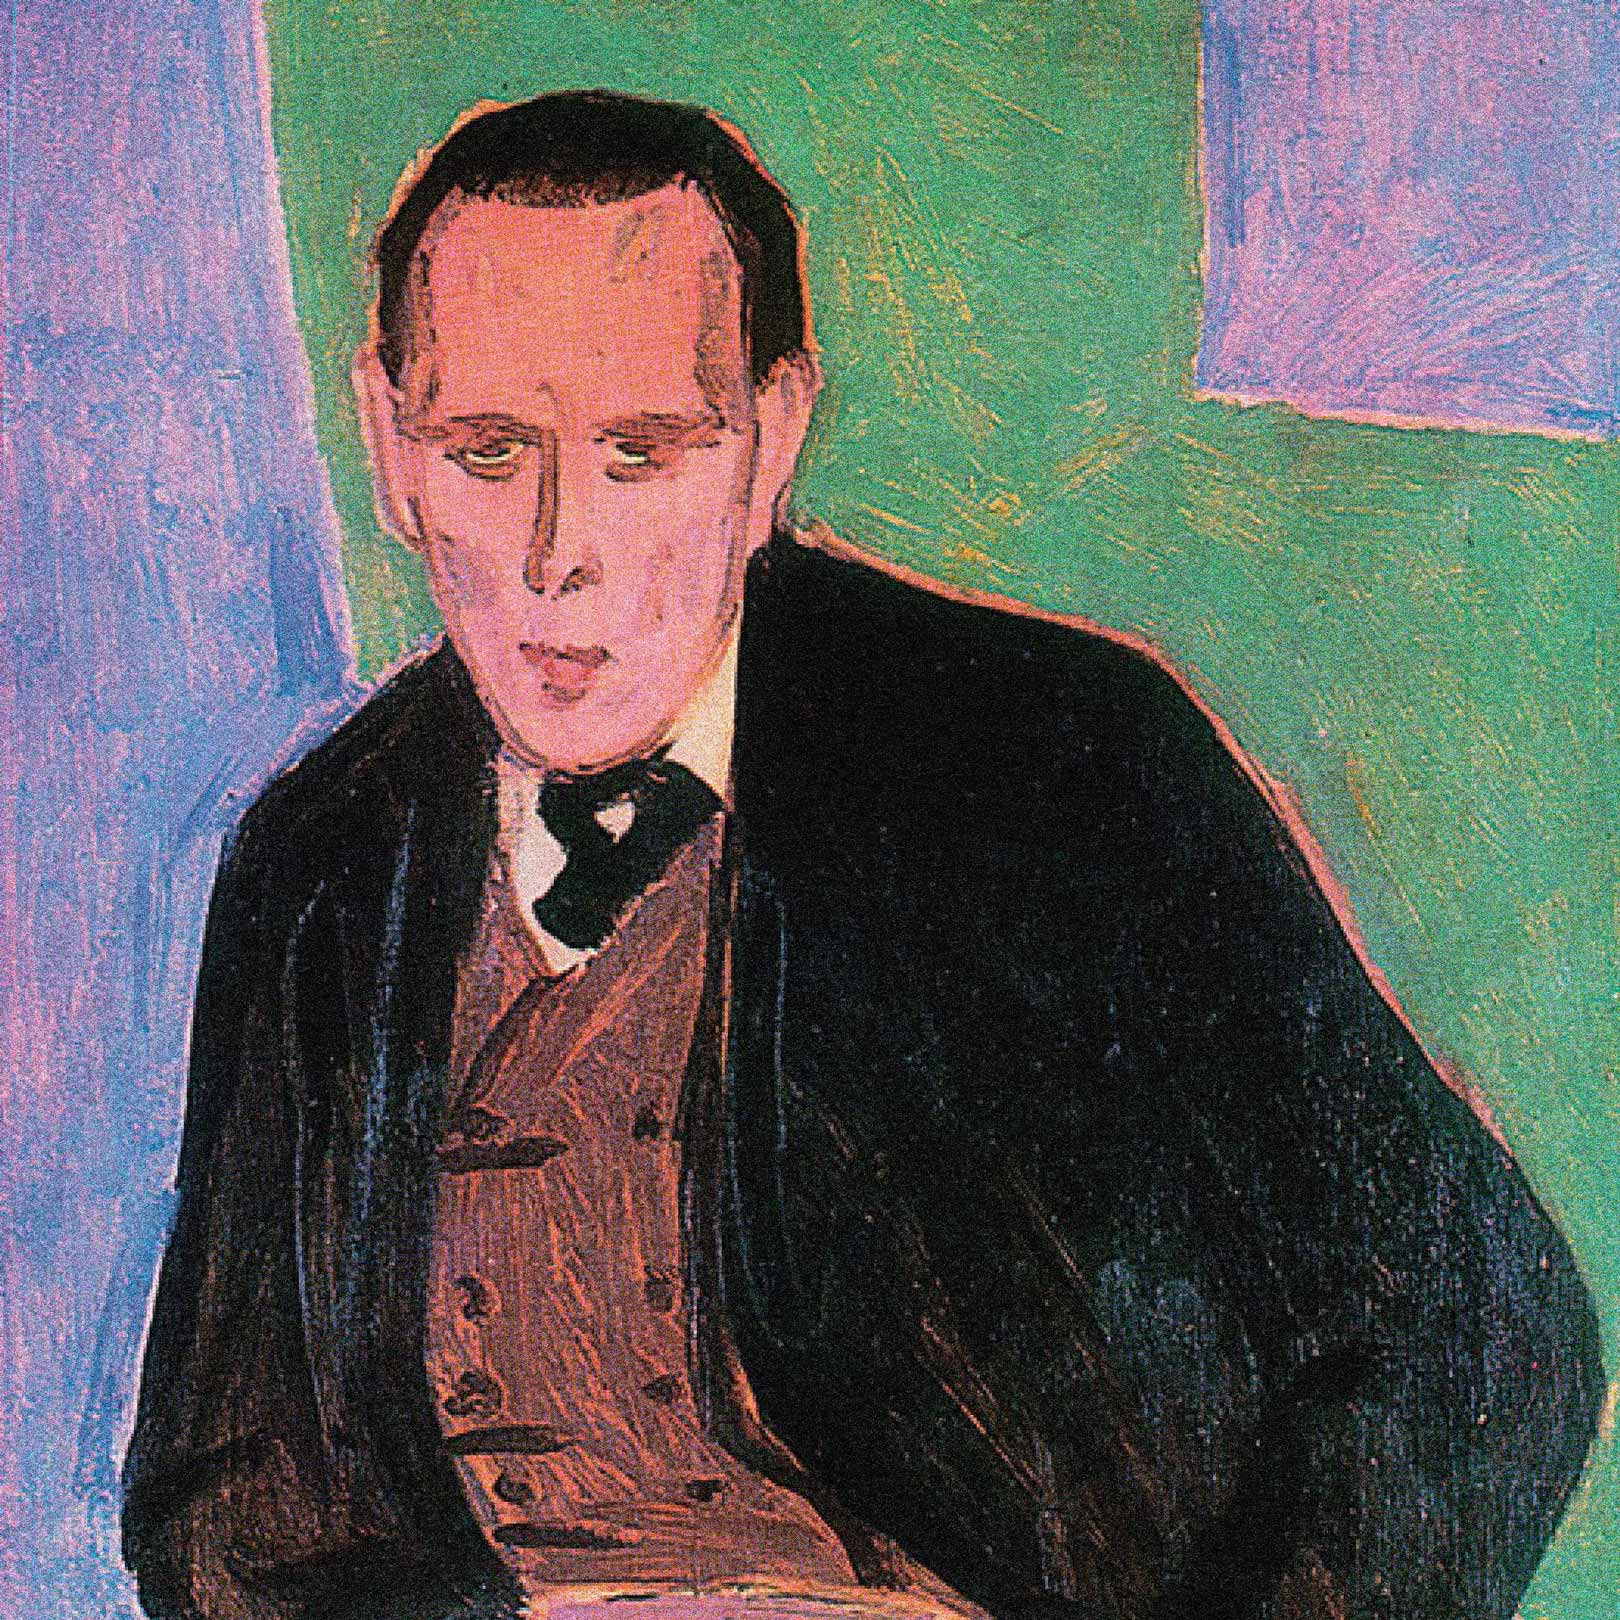 Портрет Даниила Хармса, художник В. Гринберг, 1941